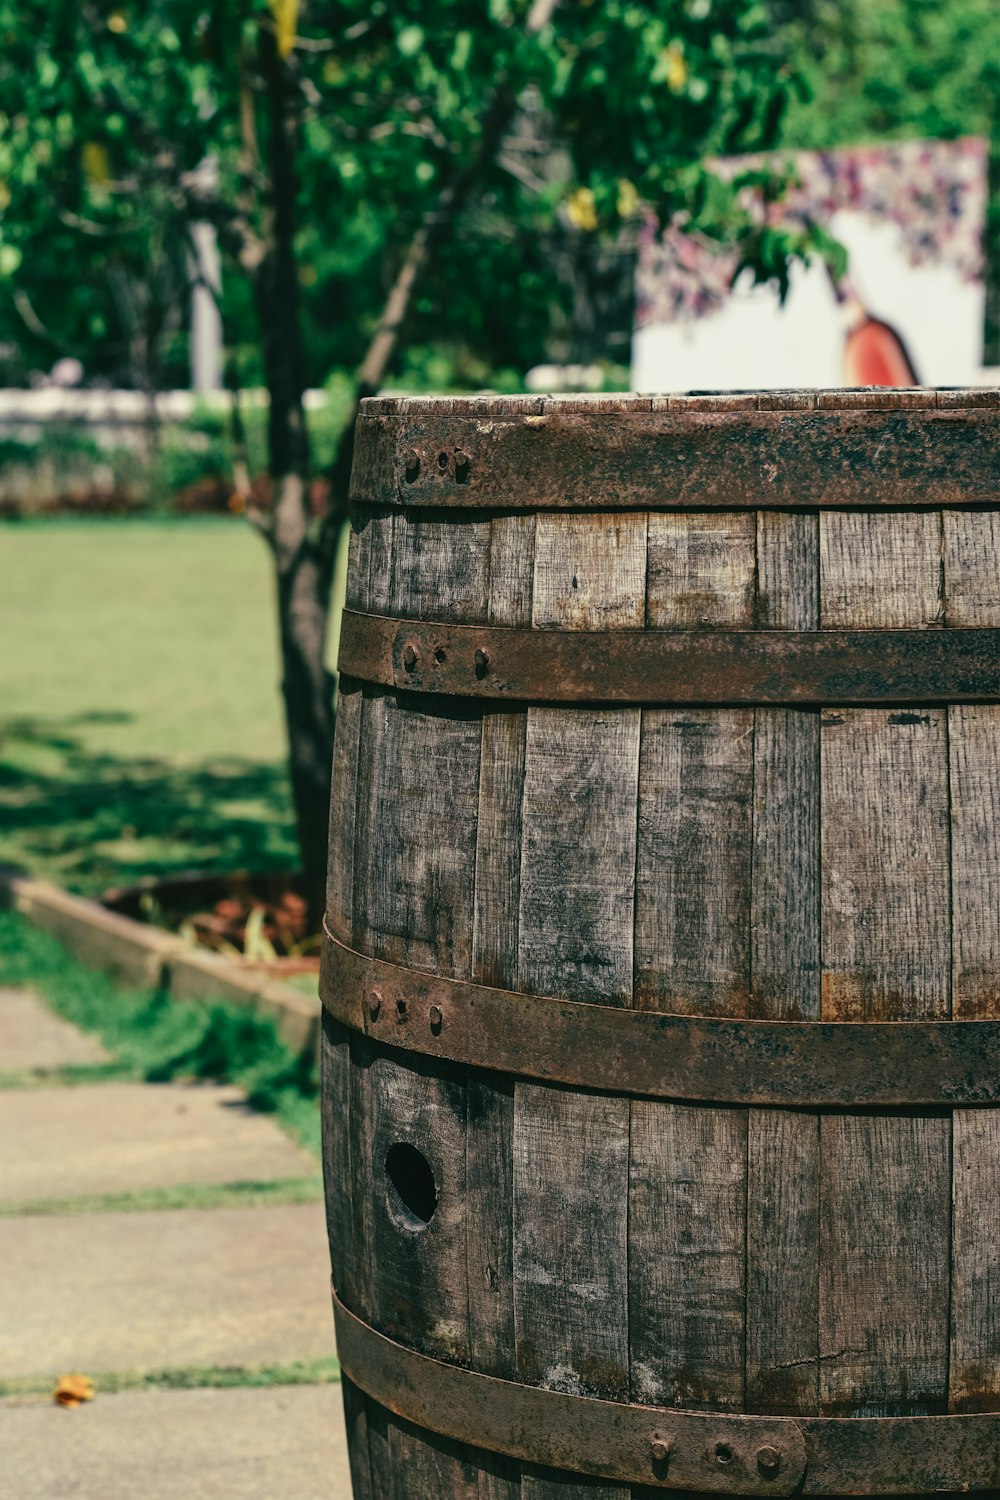 a wooden barrel sitting on top of a sidewalk